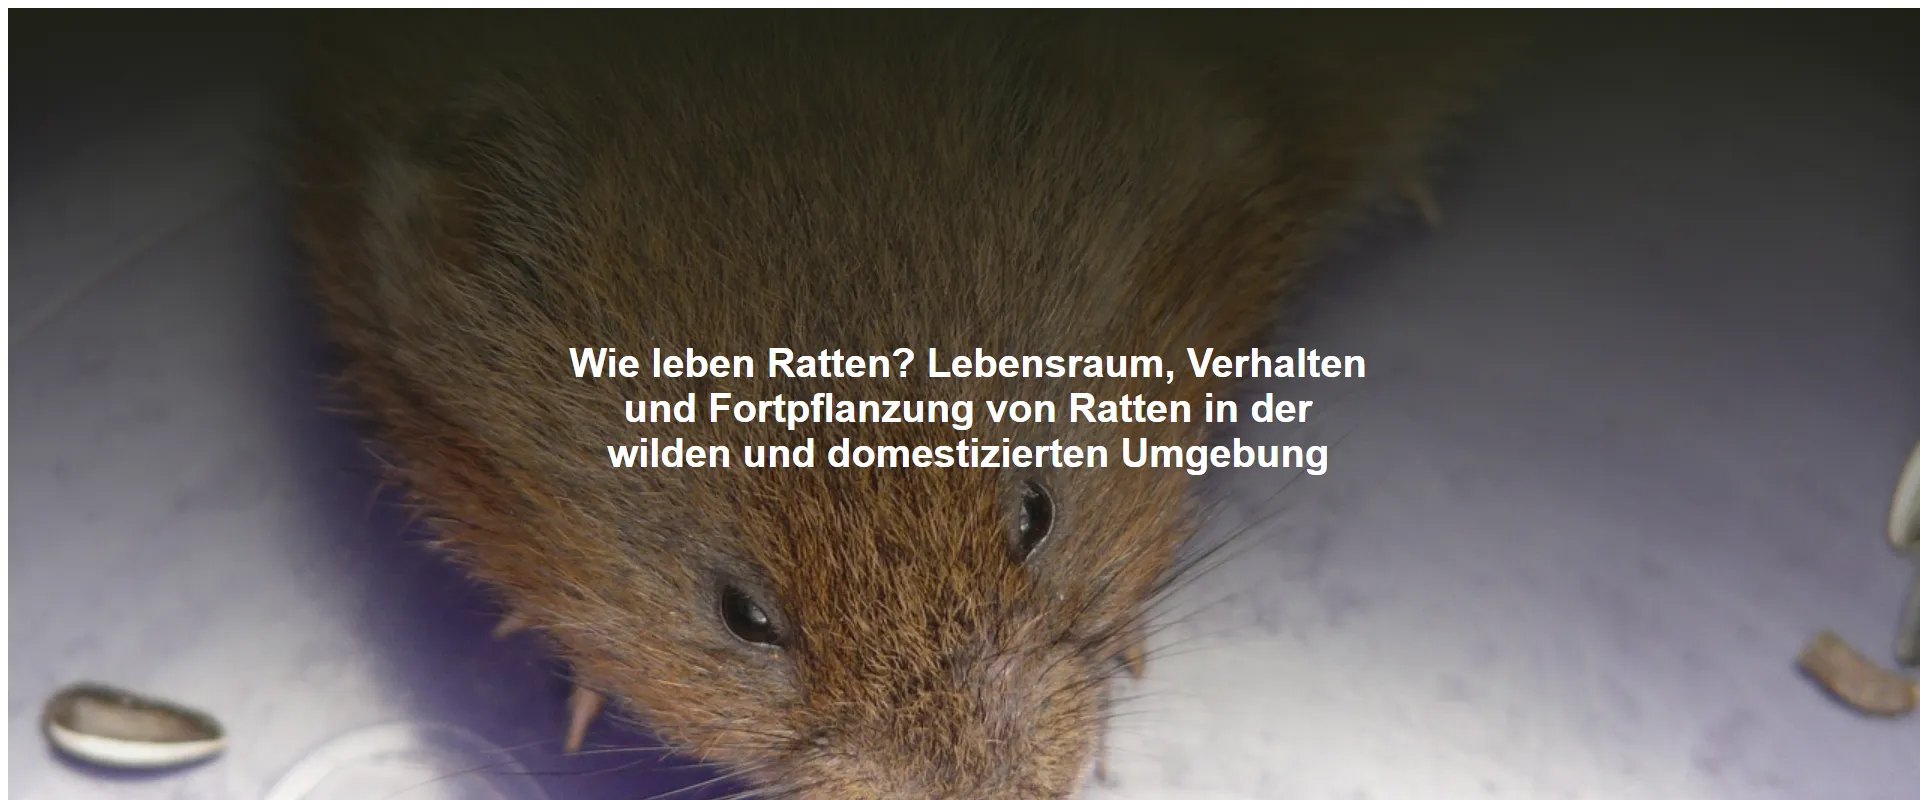 Wie leben Ratten? Lebensraum, Verhalten und Fortpflanzung von Ratten in der wilden und domestizierten Umgebung